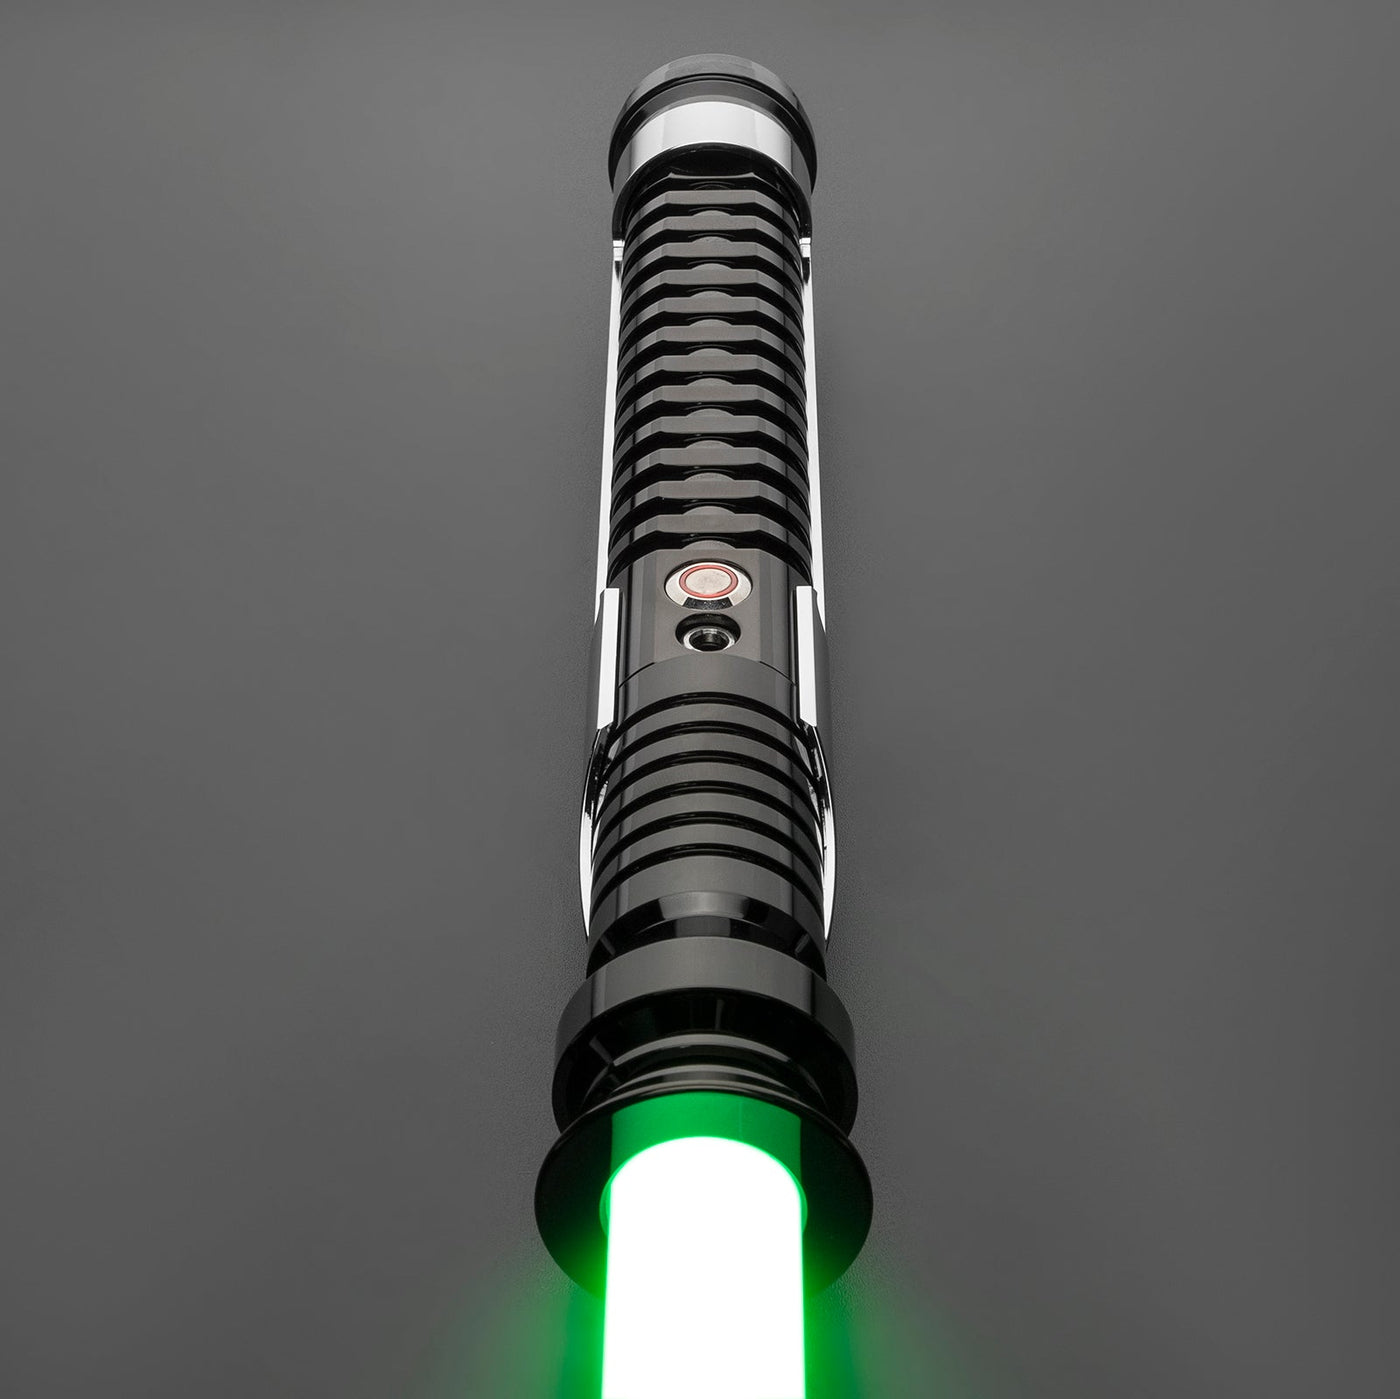 Faithbringer - KenJo Sabers - Star Wars Lightsaber replica Jedi Sith - Best sabershop Europe - Nederland light sabers kopen -